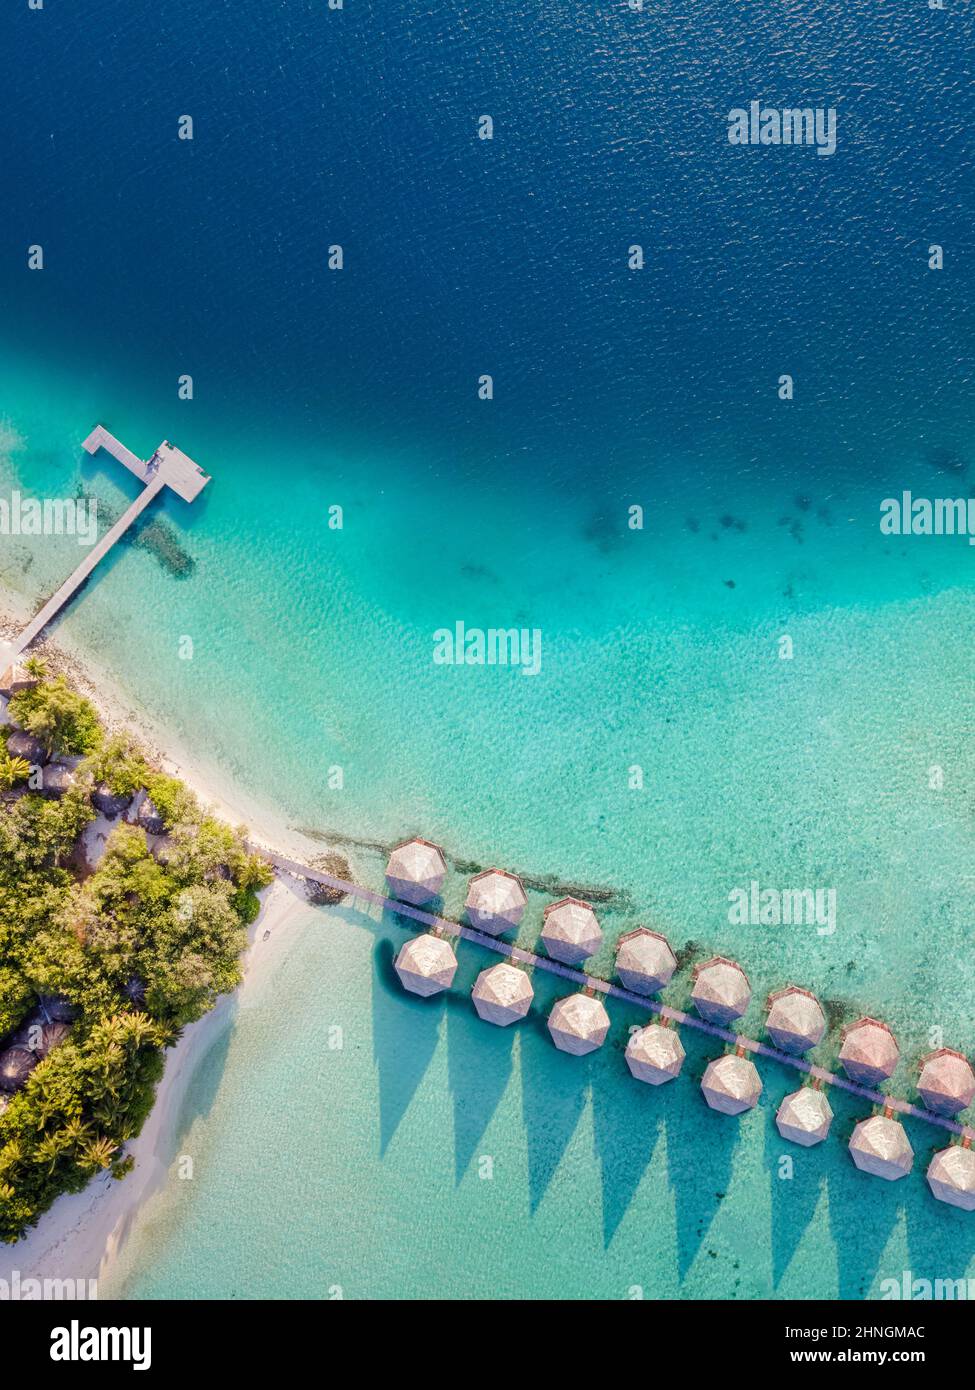 Überwasser-Villen und weißer Sandstrand auf einer tropischen Insel für Urlaubsreisen und Flitterwochen. Luxus-Resort-Hotel auf den Malediven oder der Karibik mit Stockfoto